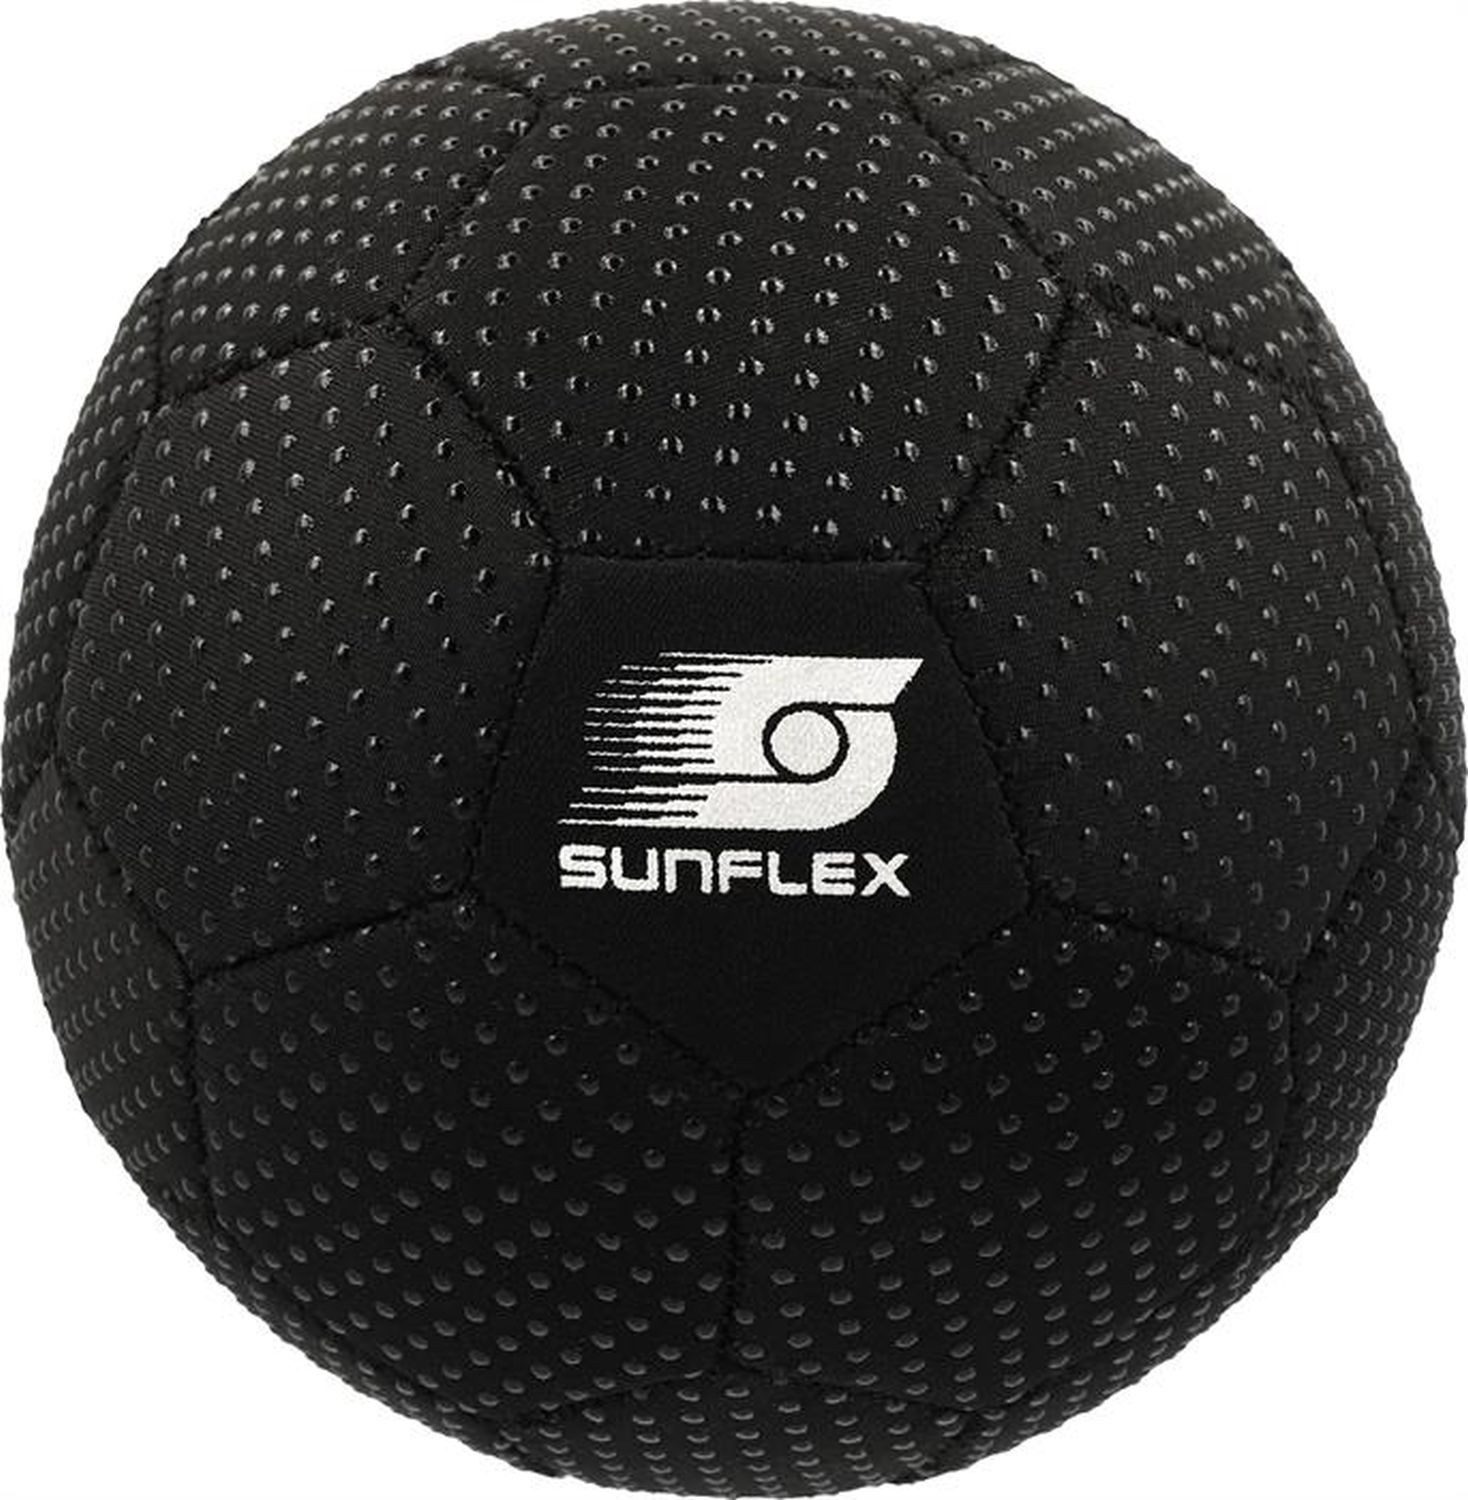 Sunflex Spielball Grippyball Size 3 Schwarz, Handball Strandball Wasserball Wurfball Fangen Werfen Beachball